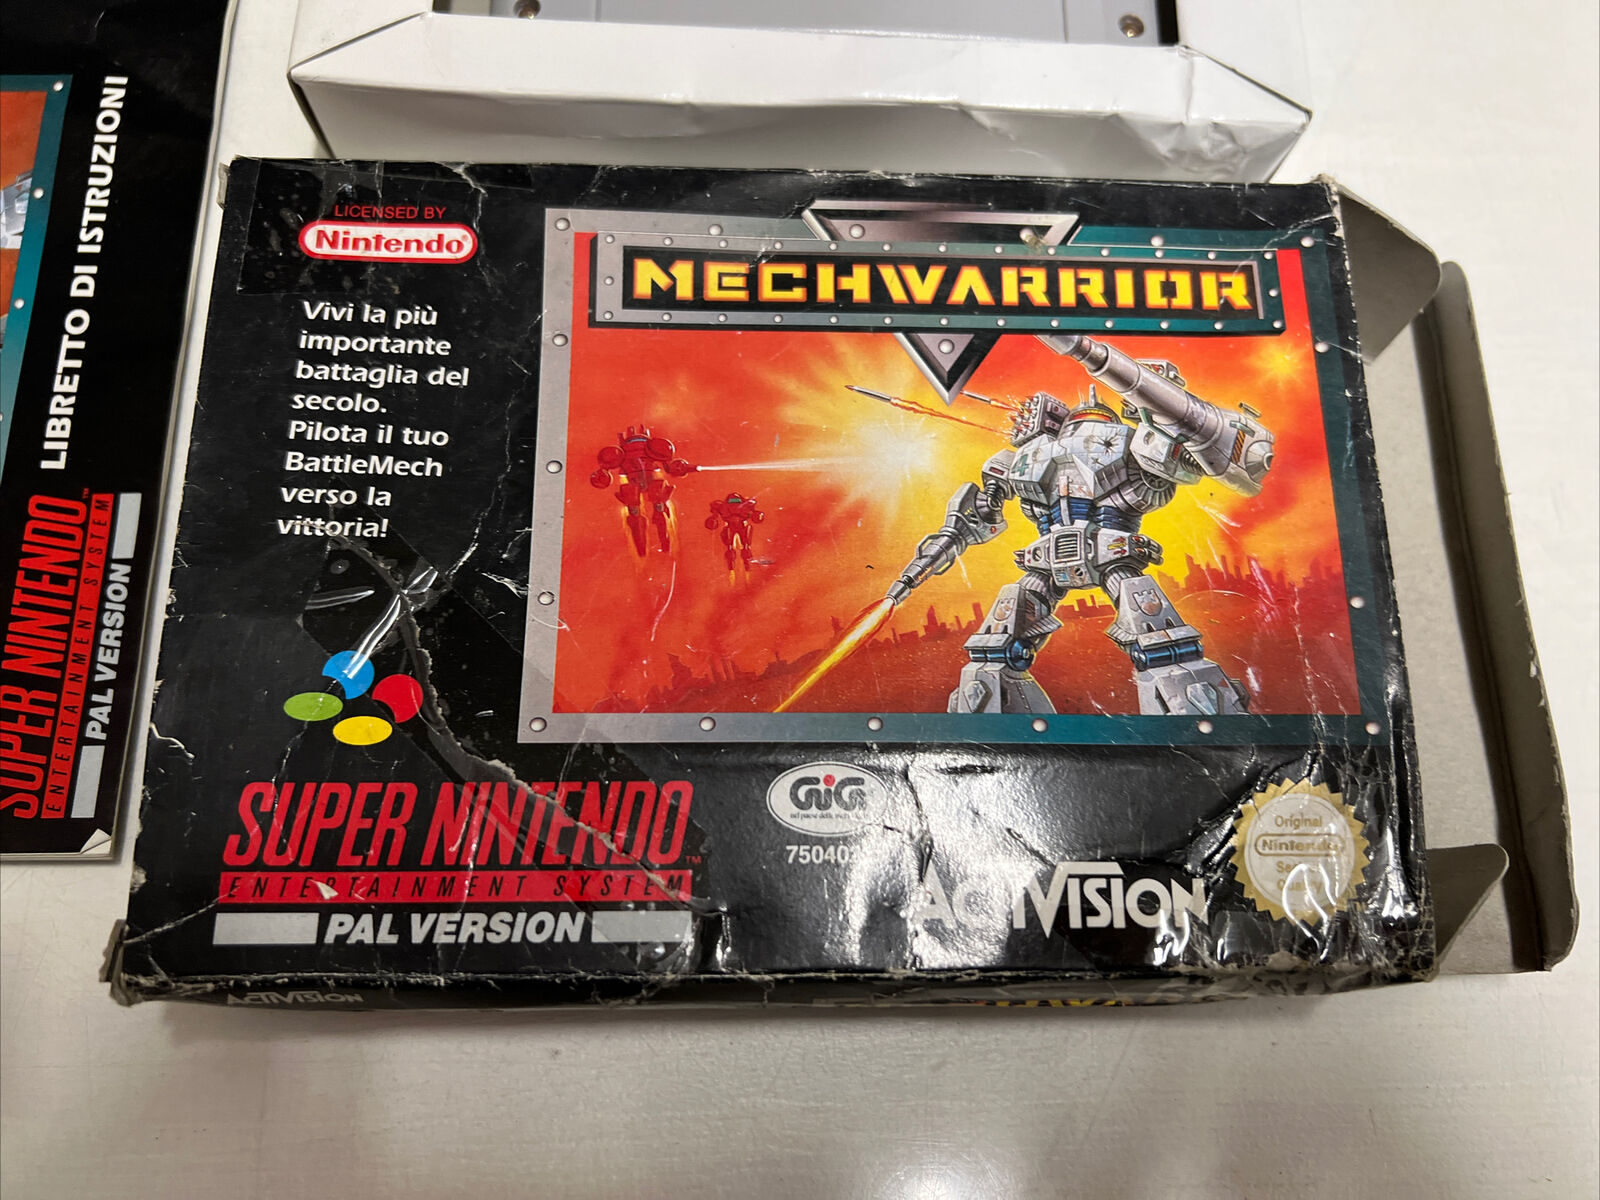 SUPER-NINTENDO-Videogioco-Mechwarrior-Pal-Ita-Gig-133968860790-7